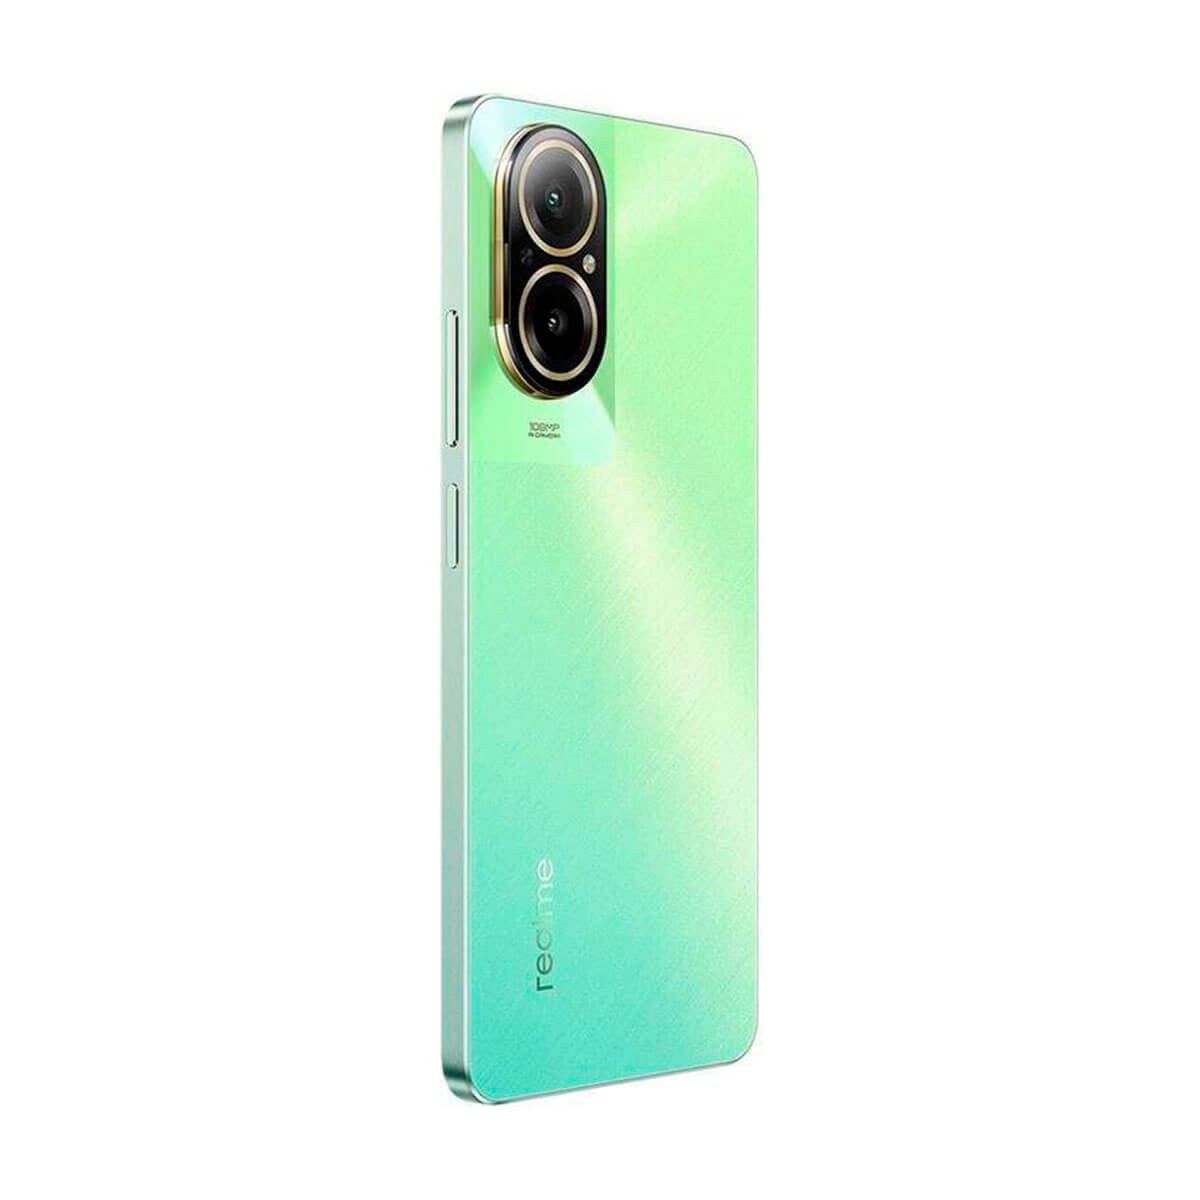 Realme C67 4G 6GB/128GB Verde (Sunny Oasis) Dual SIM RMX3890 Smartphone | Realme